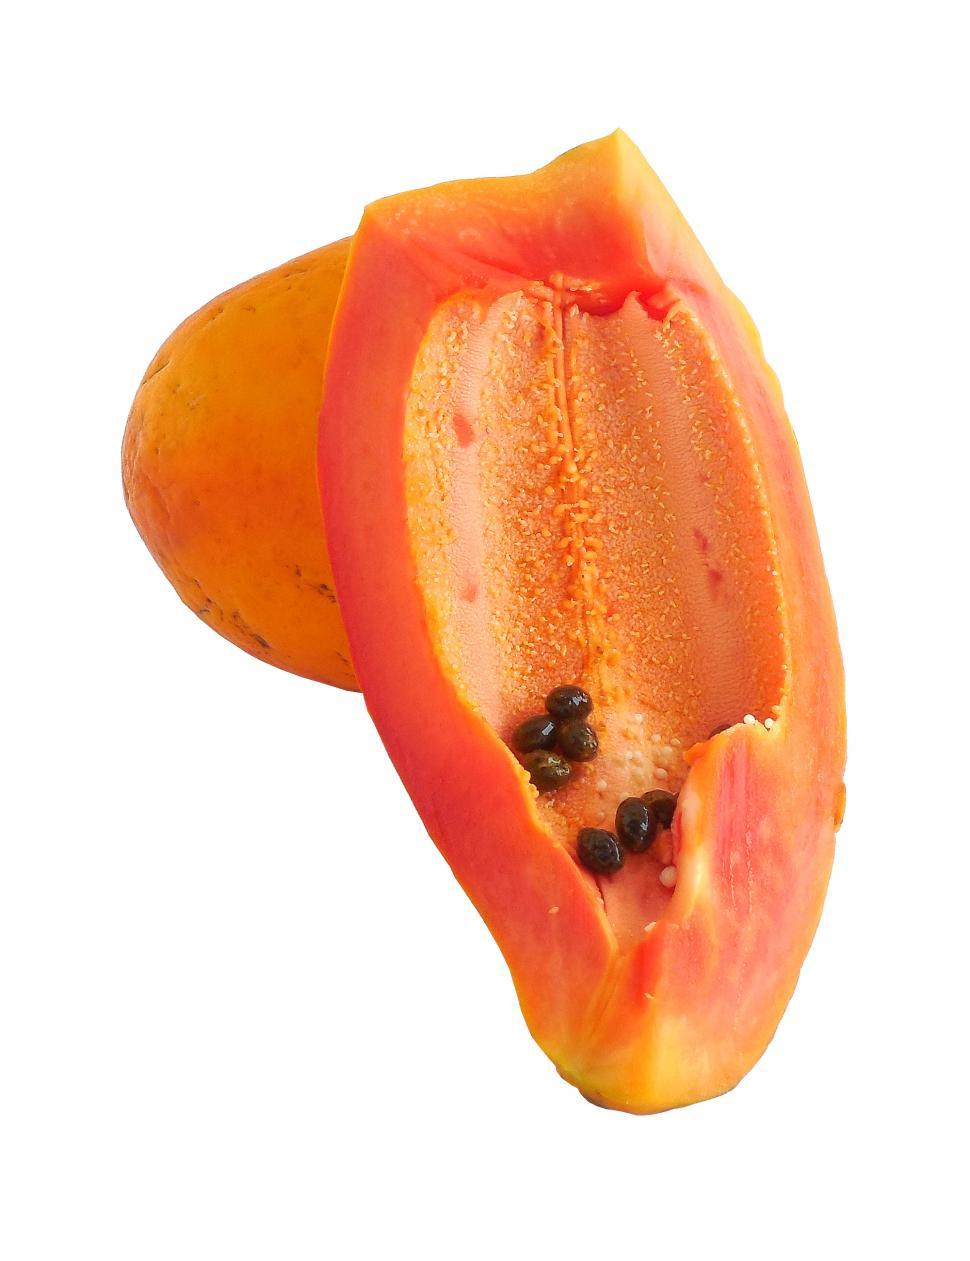 Free Image of Papaya 